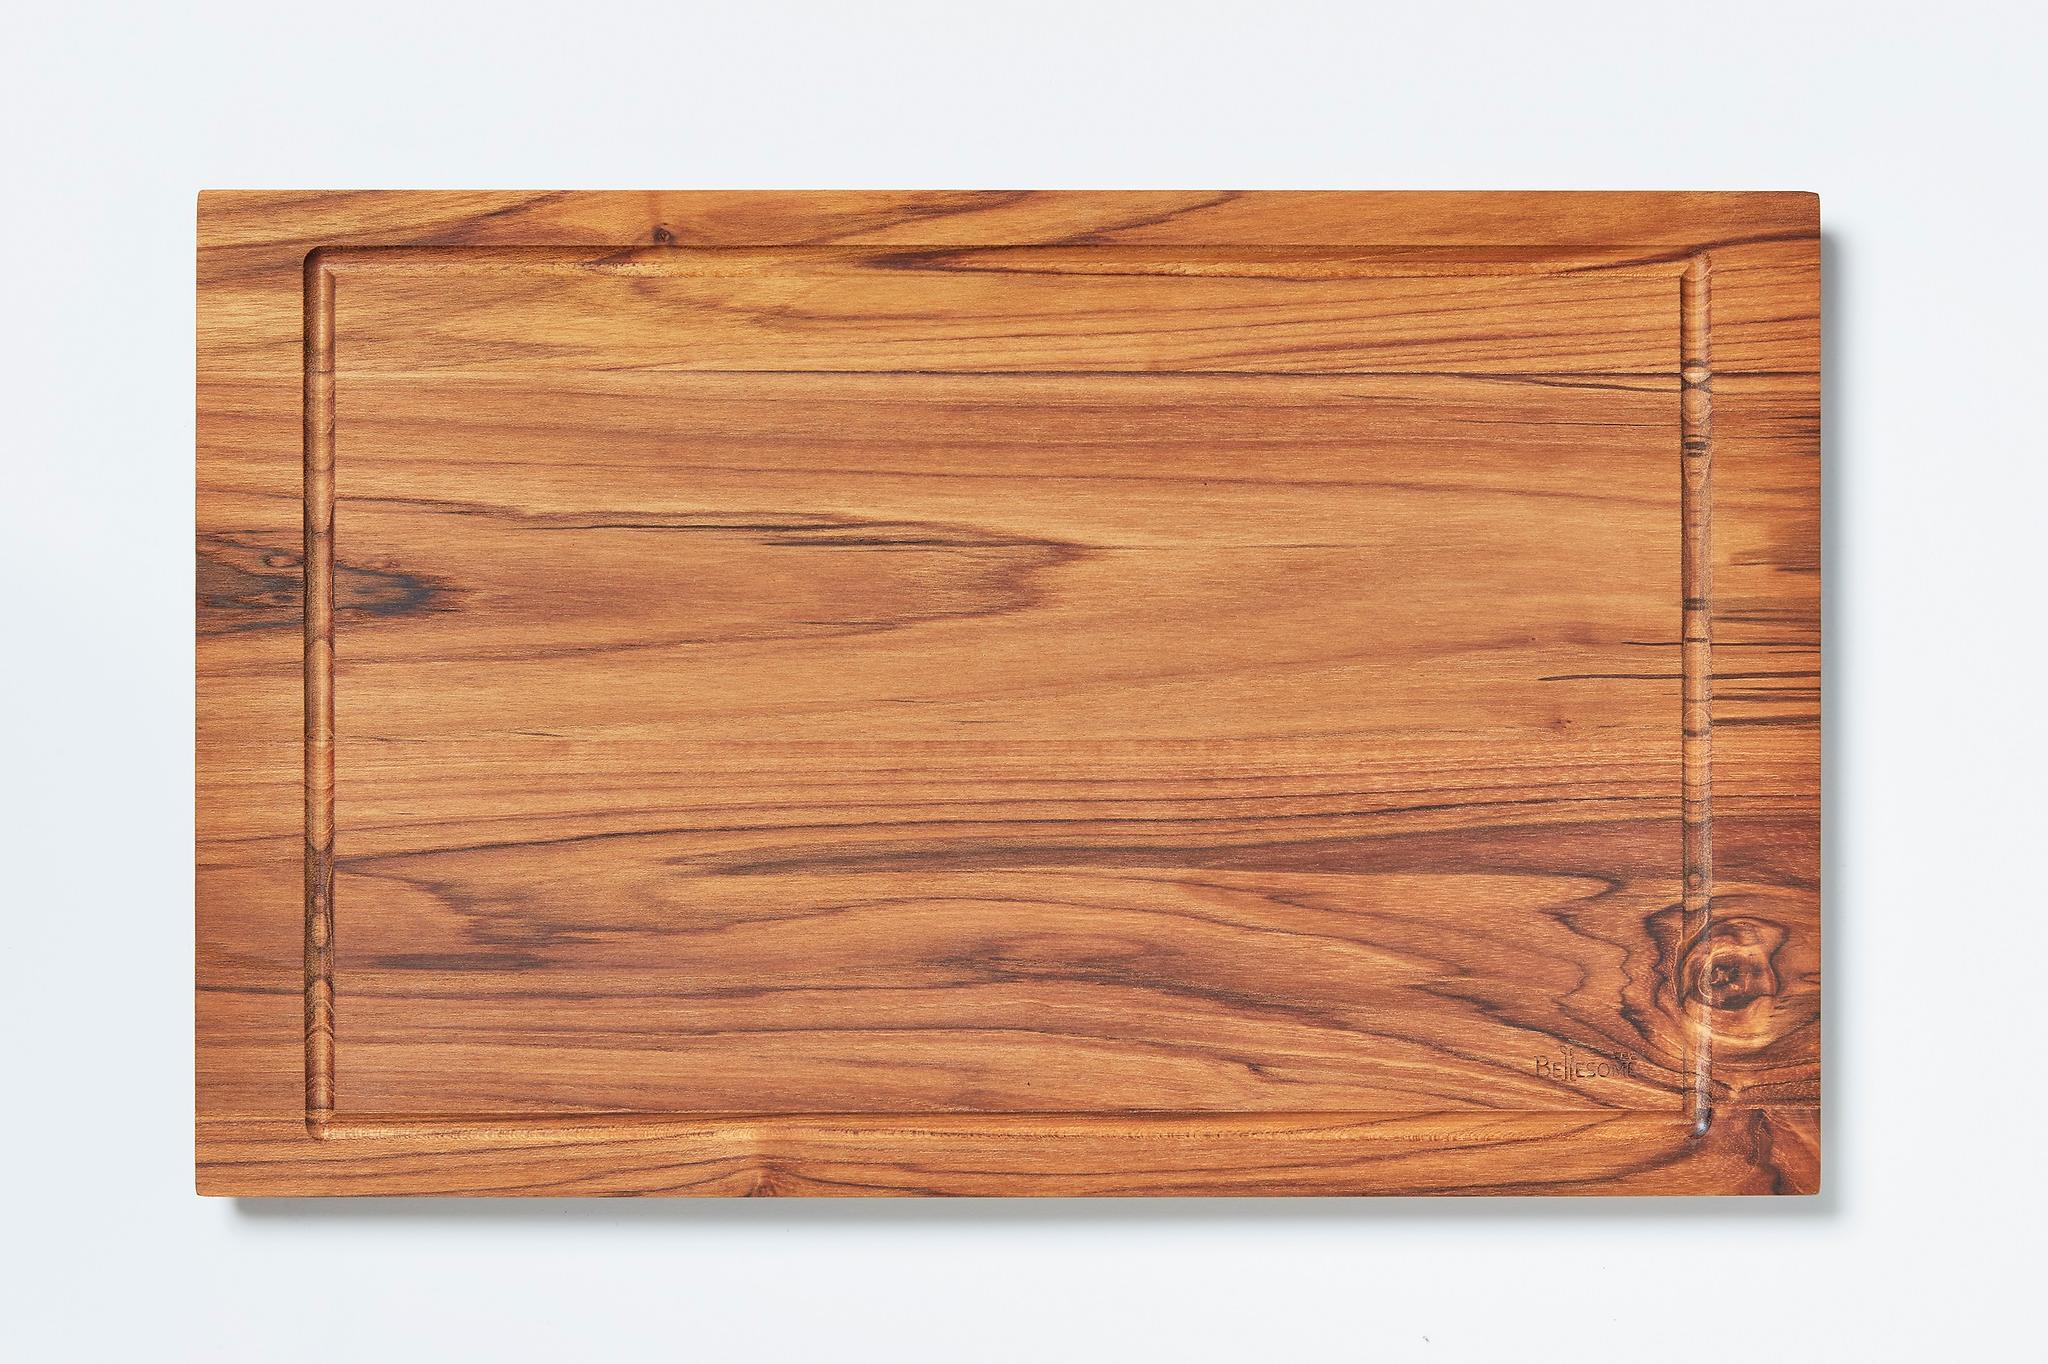 천연목재 플레이트 도마 제품 대표 작은 사진